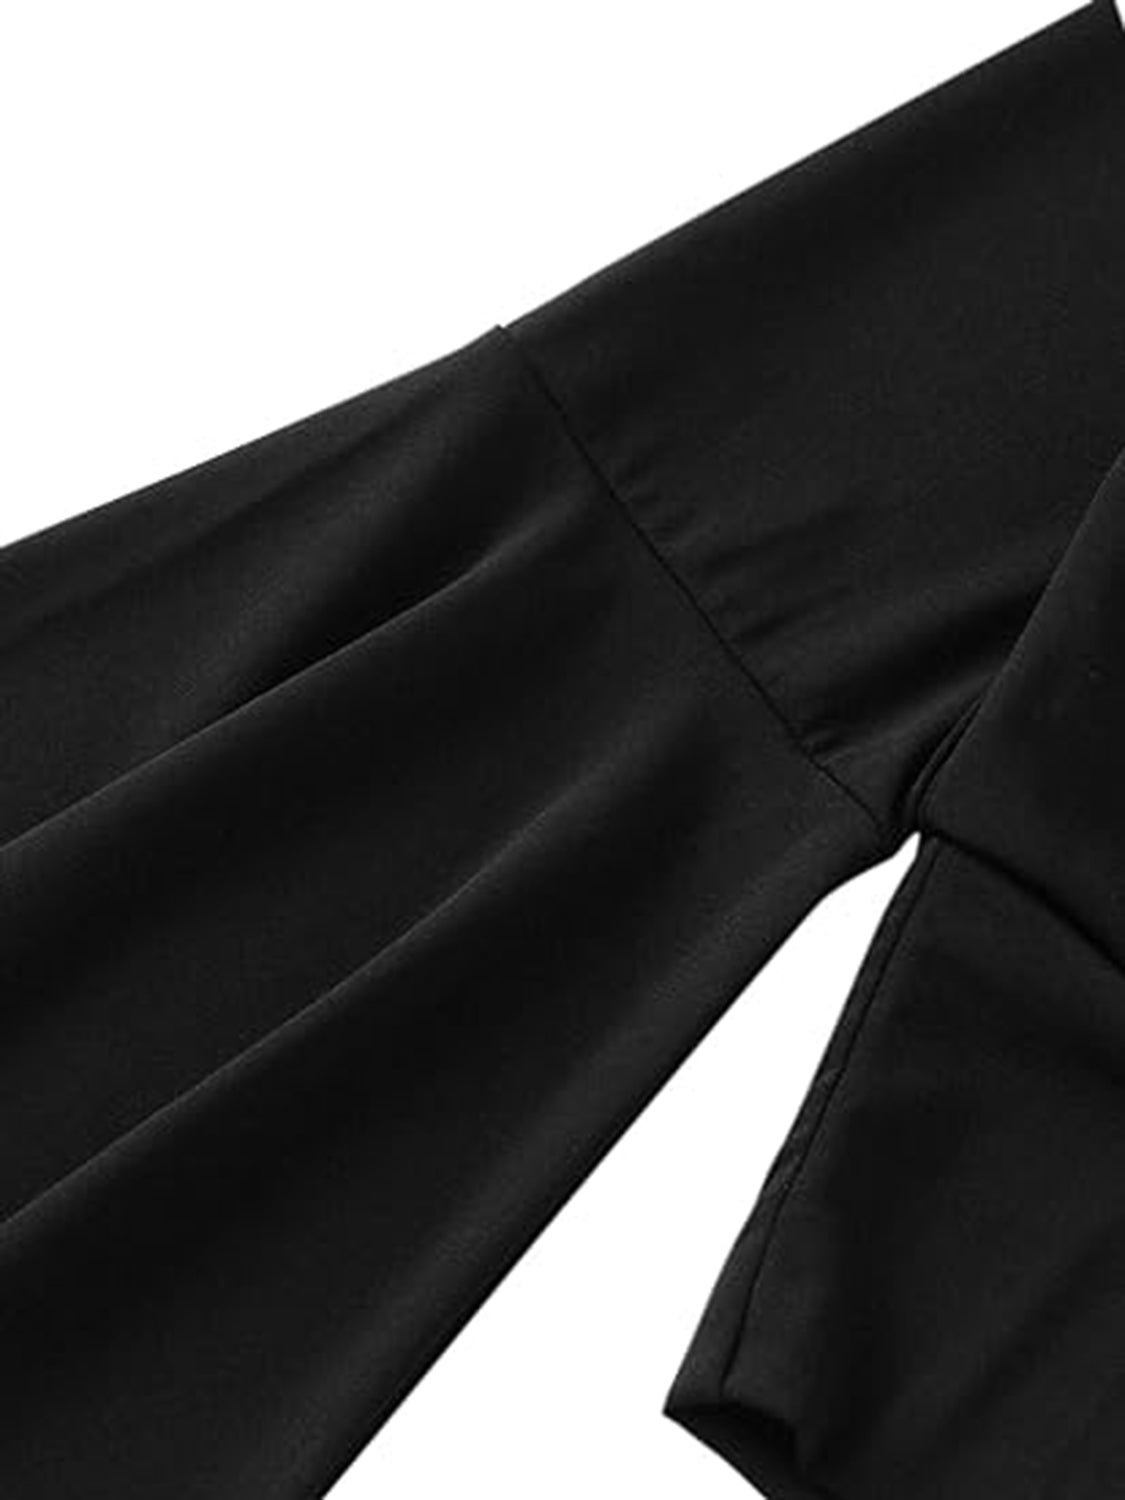 FZ Women's Plunge Flare Sleeve Cropped Top - FZwear